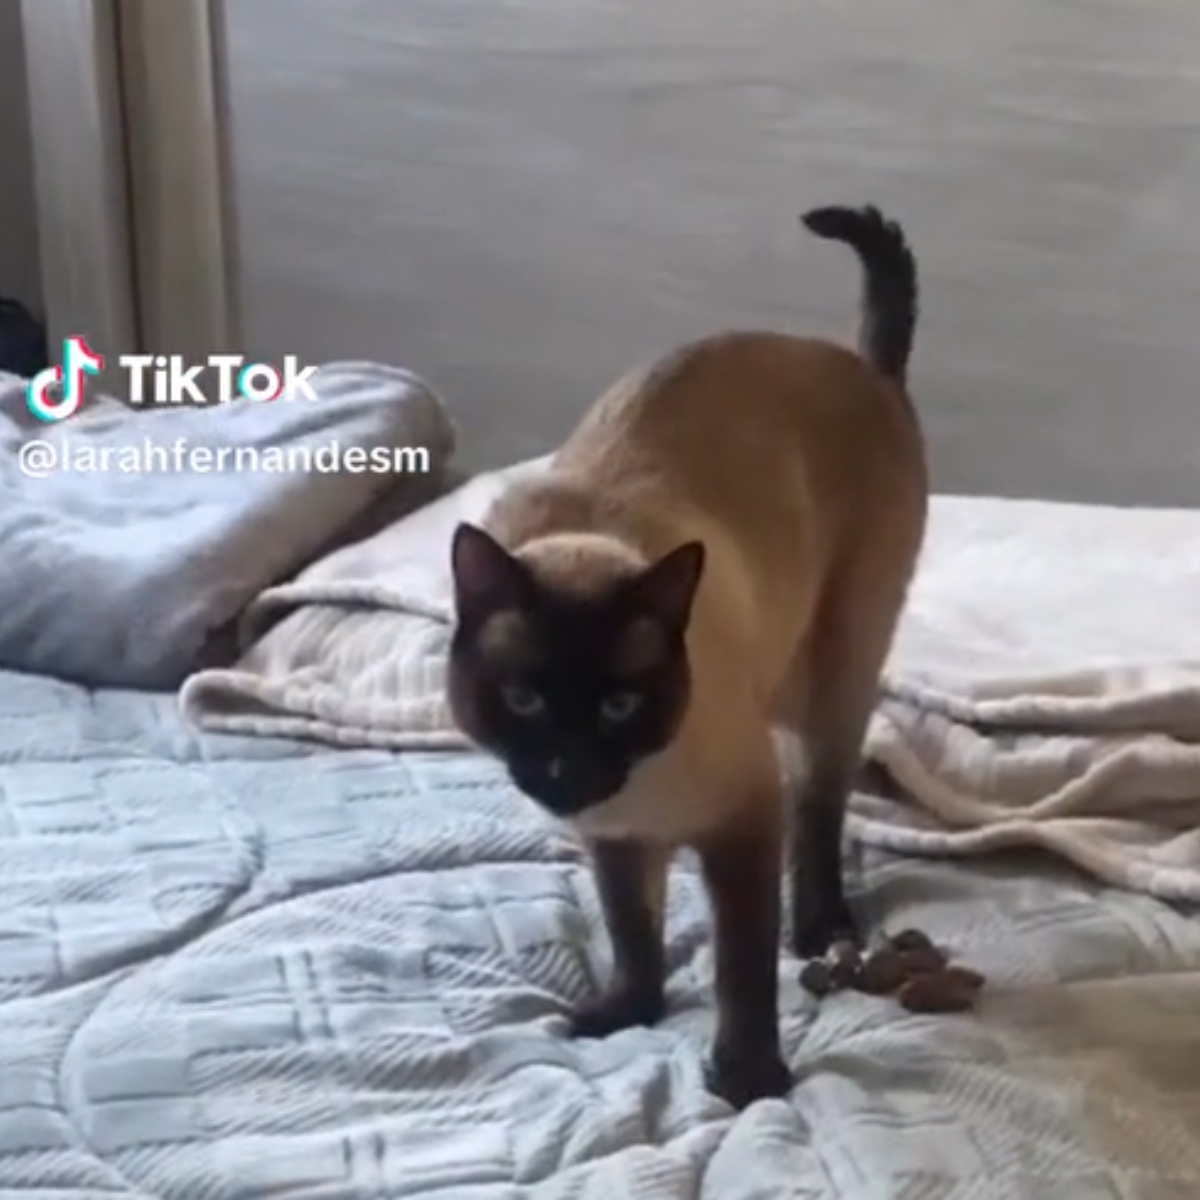  VÍDEO: Gato se irrita com troca de areia e faz necessidade em cima da cama 